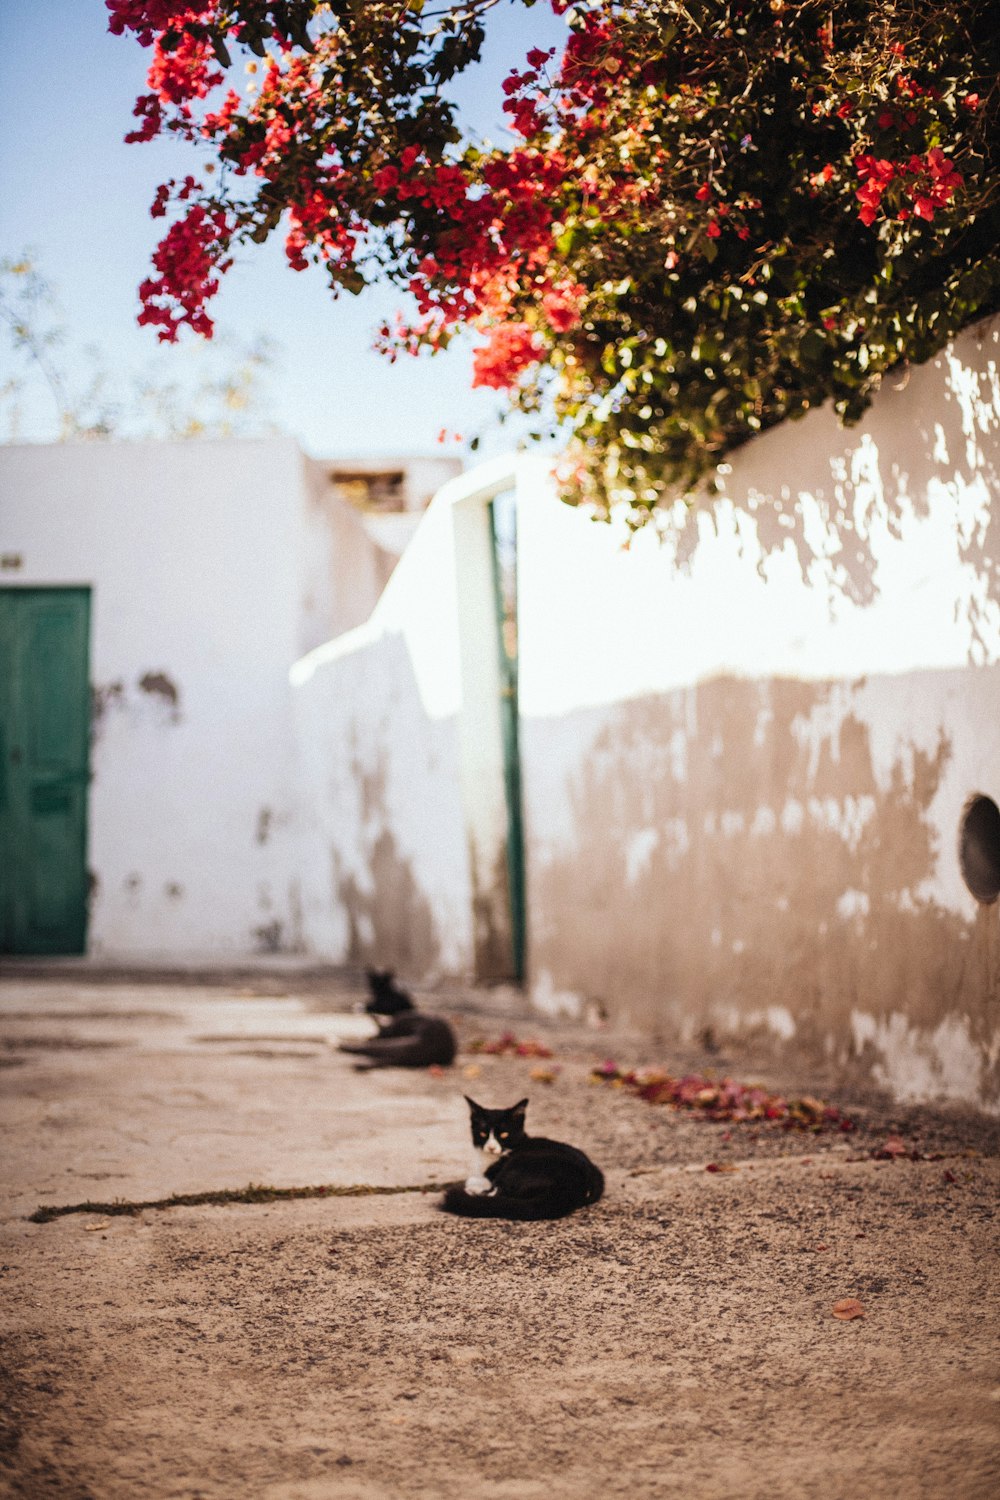 Photographie sélective de la mise au point d’un chat smoking allongé sur un trottoir brun